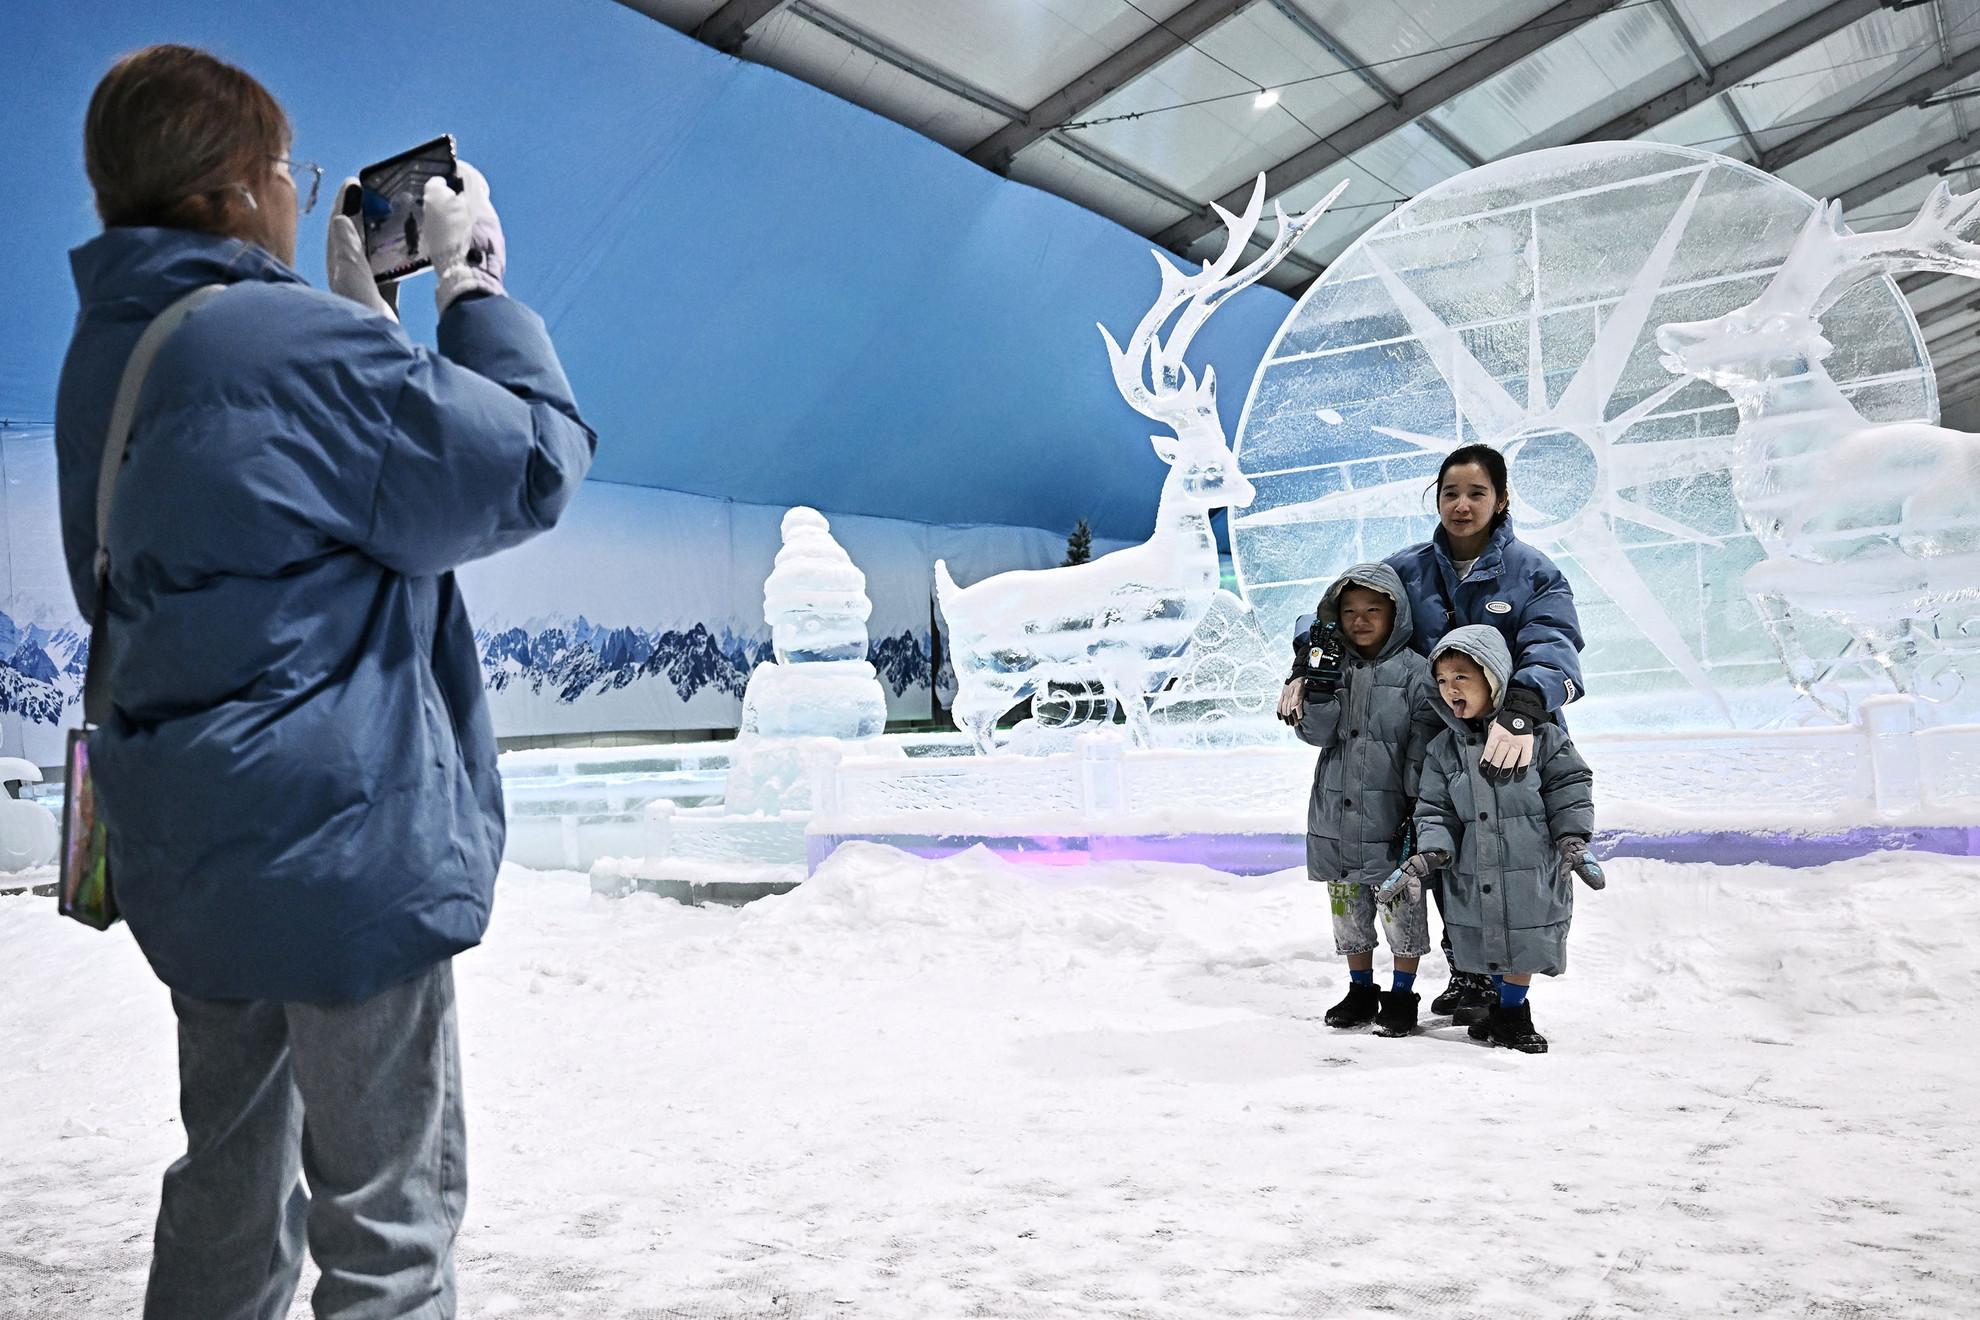 Fagypont alatti hőmérsékleten szórakozhatnak a látogatók a Fantasy On Ice fedett vándorrendezvényen Bangkokban, 2023. április 19-én, miközben az elmúlt évek legforróbb időjárása sújtja a térséget. A 3000 méter alapterületű és 11,5 méter magas óriás sátrat jég- és hózónákra osztották, ahol a téli szórakozás különféle területeit próbálhatják ki a hőség elől menekülők.